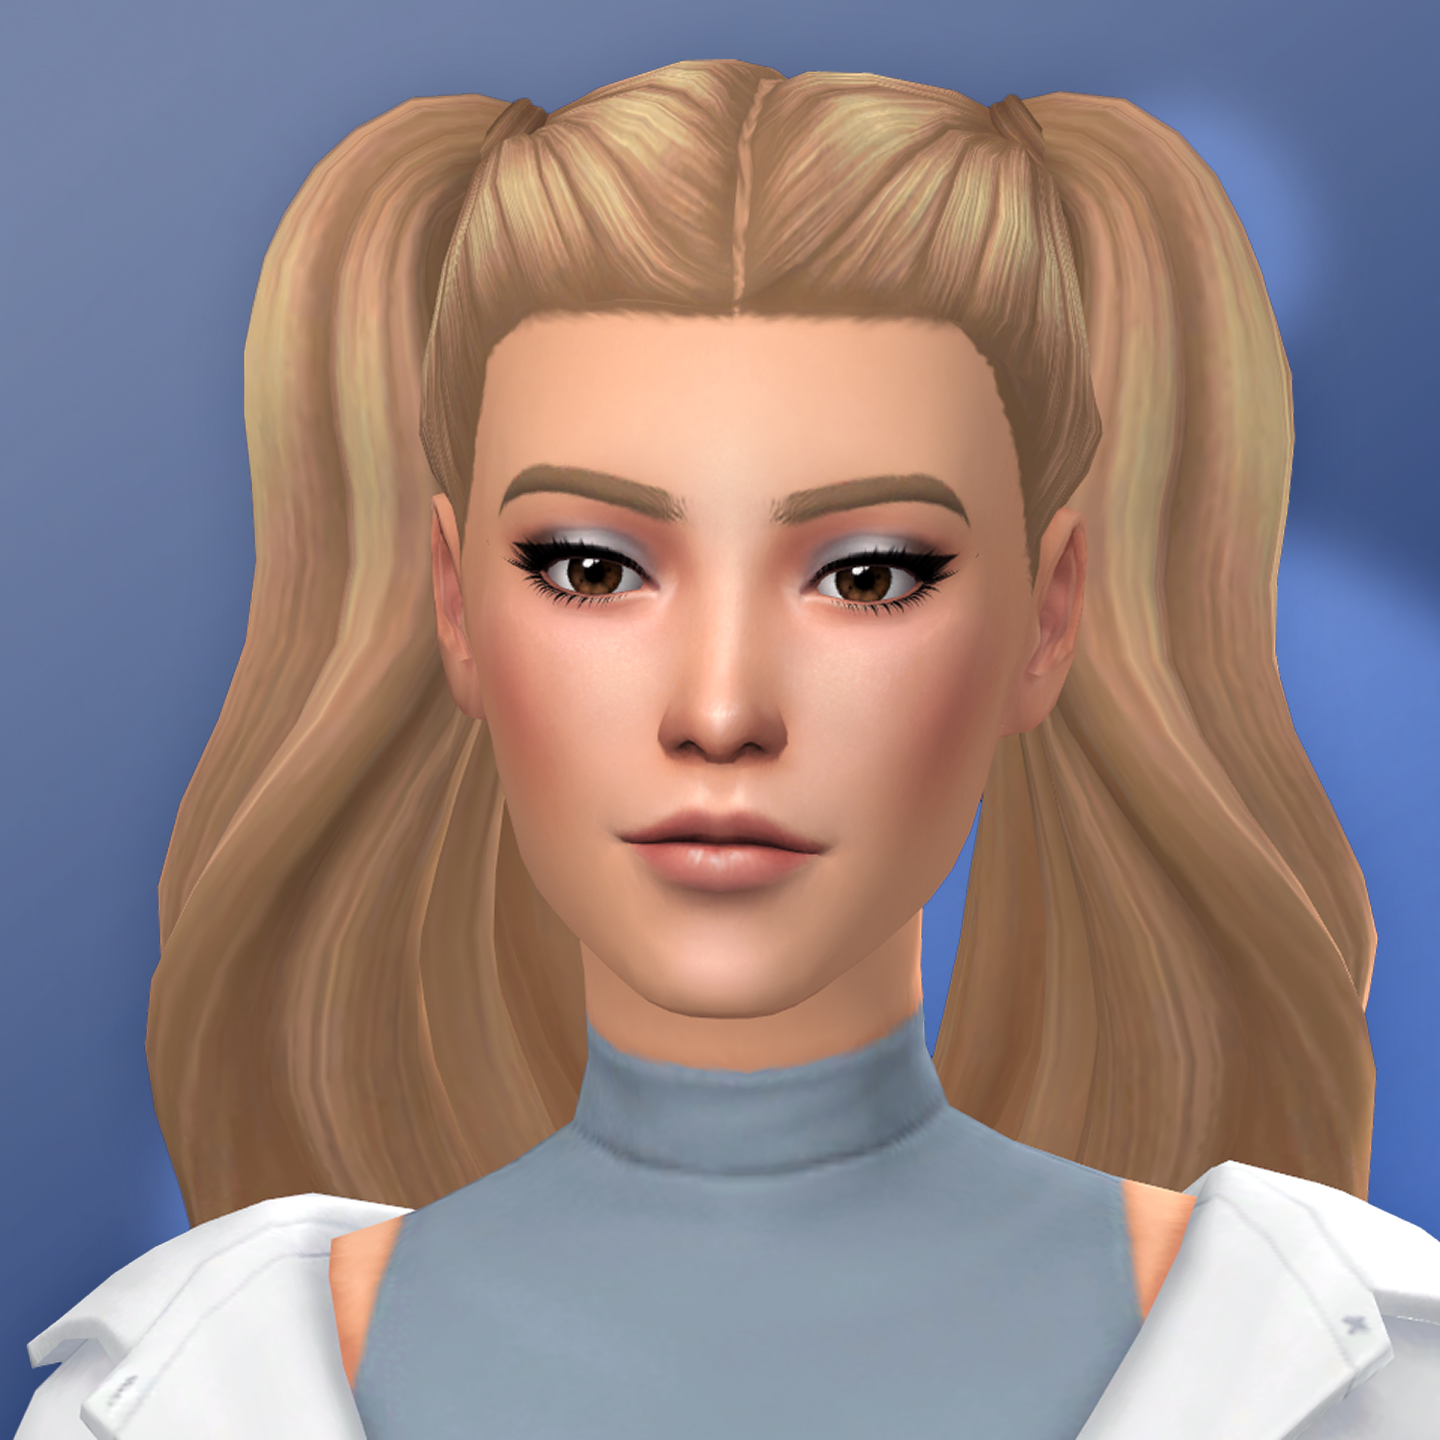 Images - QICC - Lillian Hair - Create a Sim - The Sims 4 - CurseForge